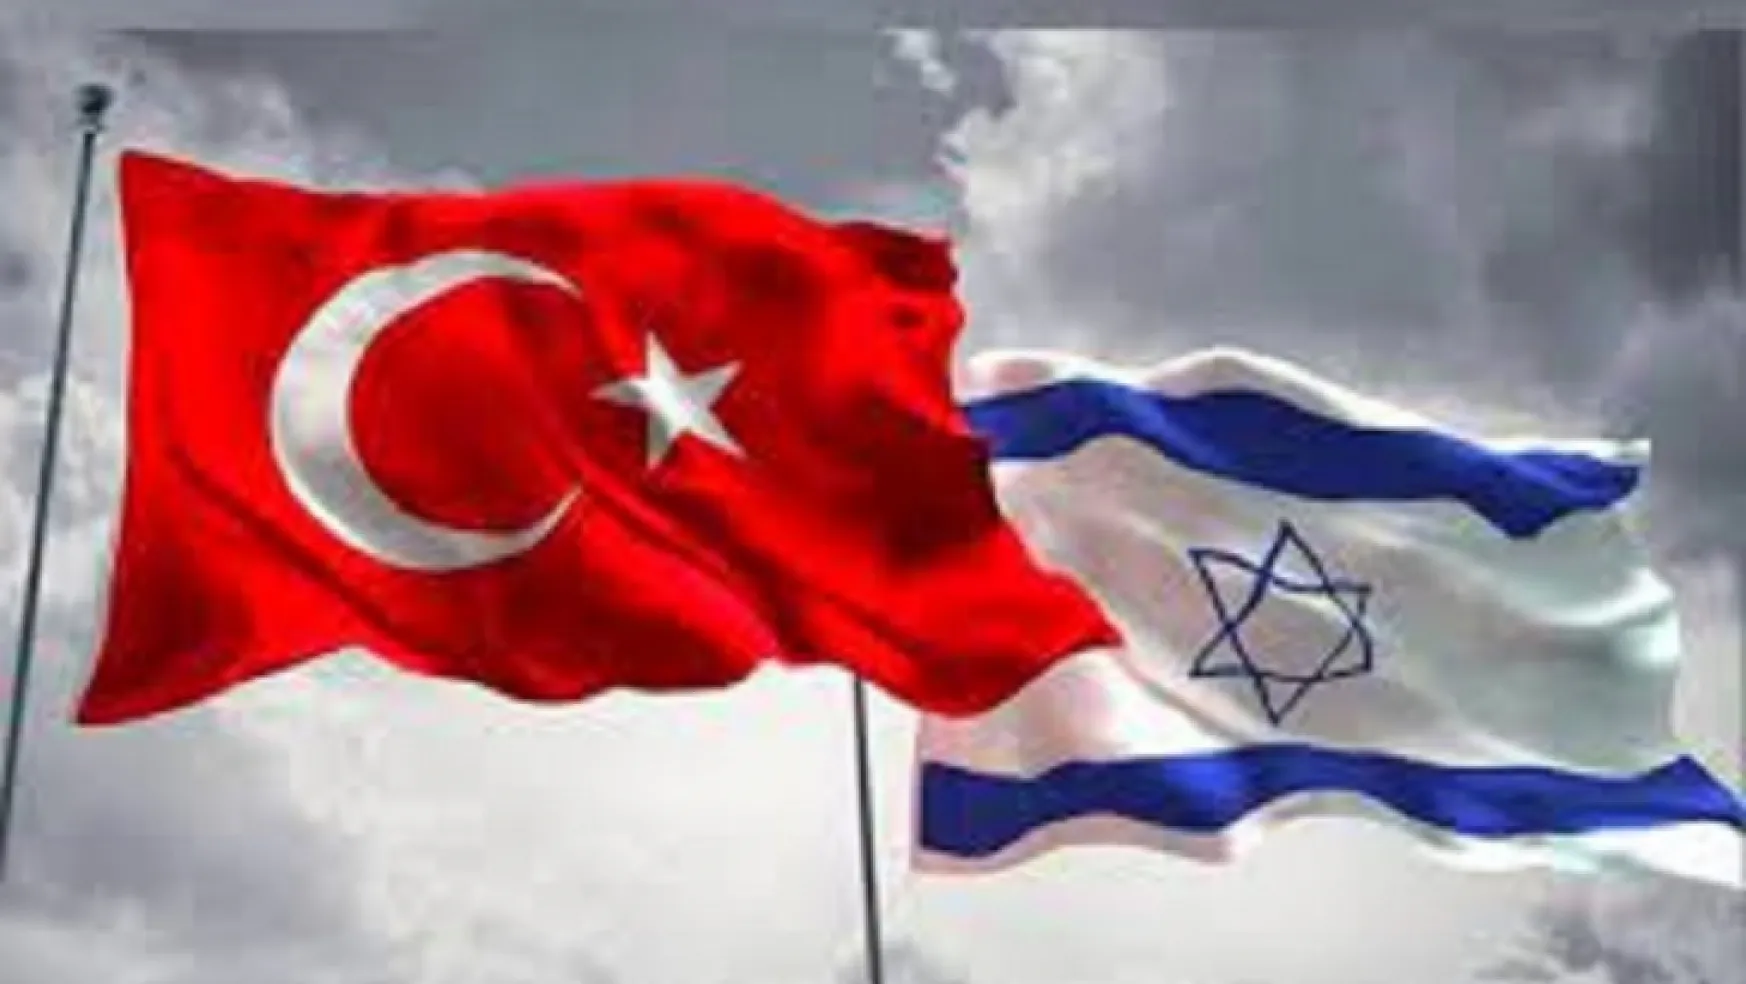 İsrail Başbakanı Lapid, Türkiye ile havacılık anlaşmasını onayladıklarını duyurdu